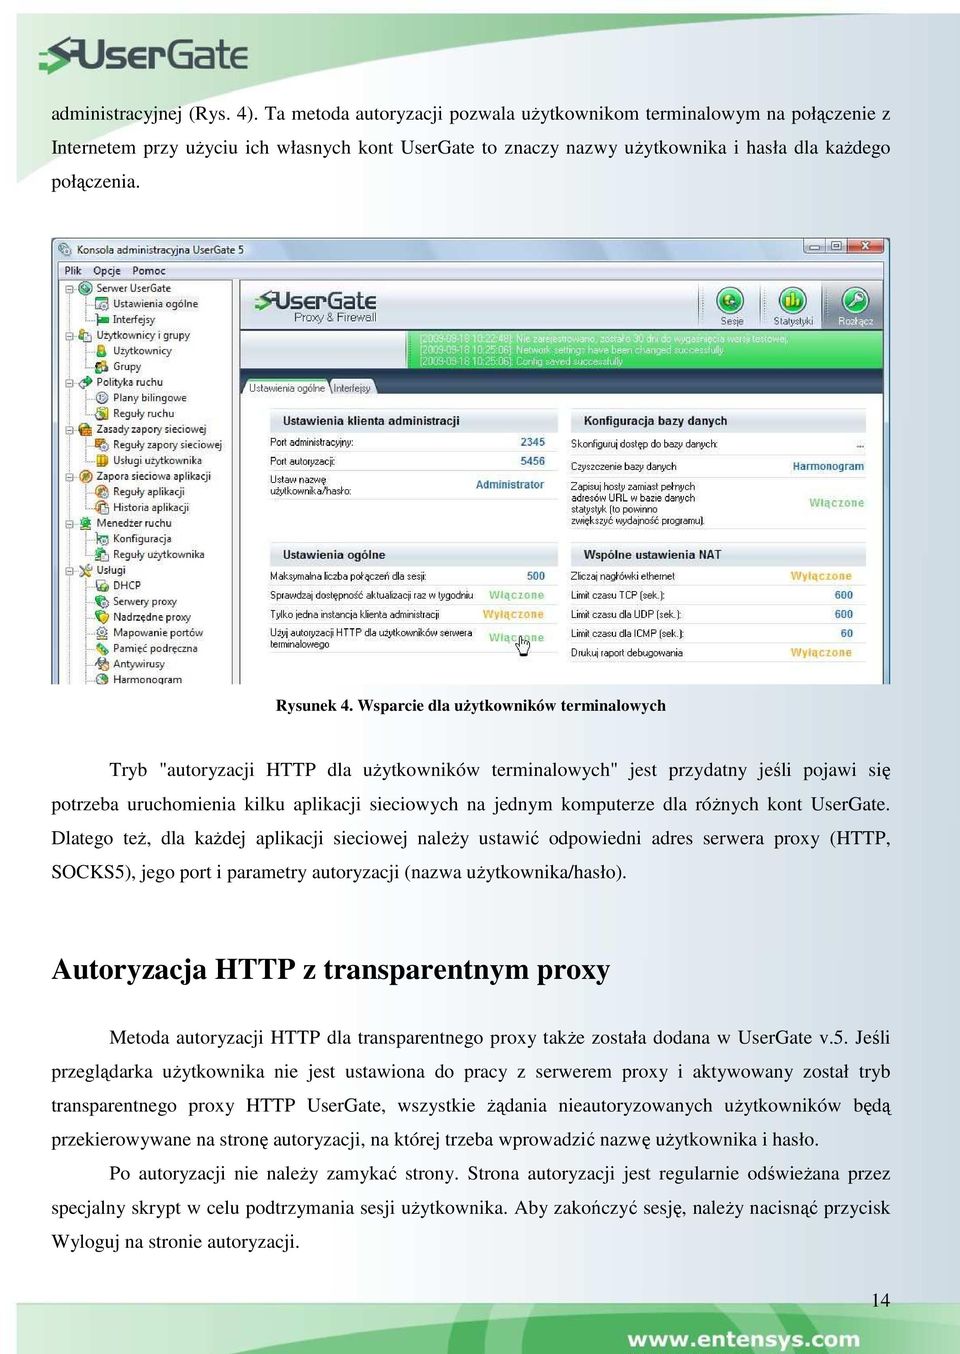 Wsparcie dla uŝytkowników terminalowych Tryb "autoryzacji HTTP dla uŝytkowników terminalowych" jest przydatny jeśli pojawi się potrzeba uruchomienia kilku aplikacji sieciowych na jednym komputerze